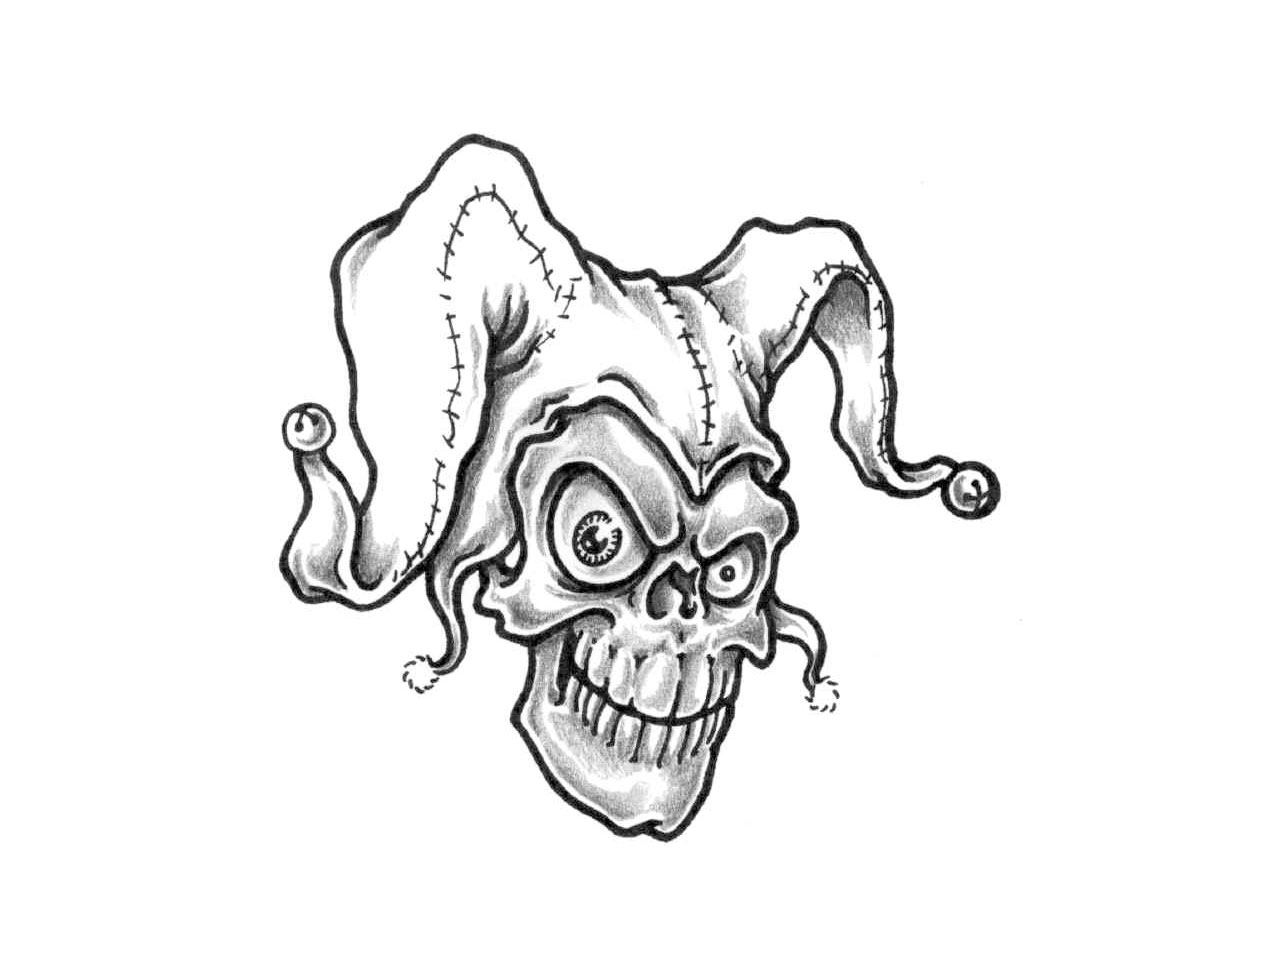 Joker Skull Tattoo Design Idea